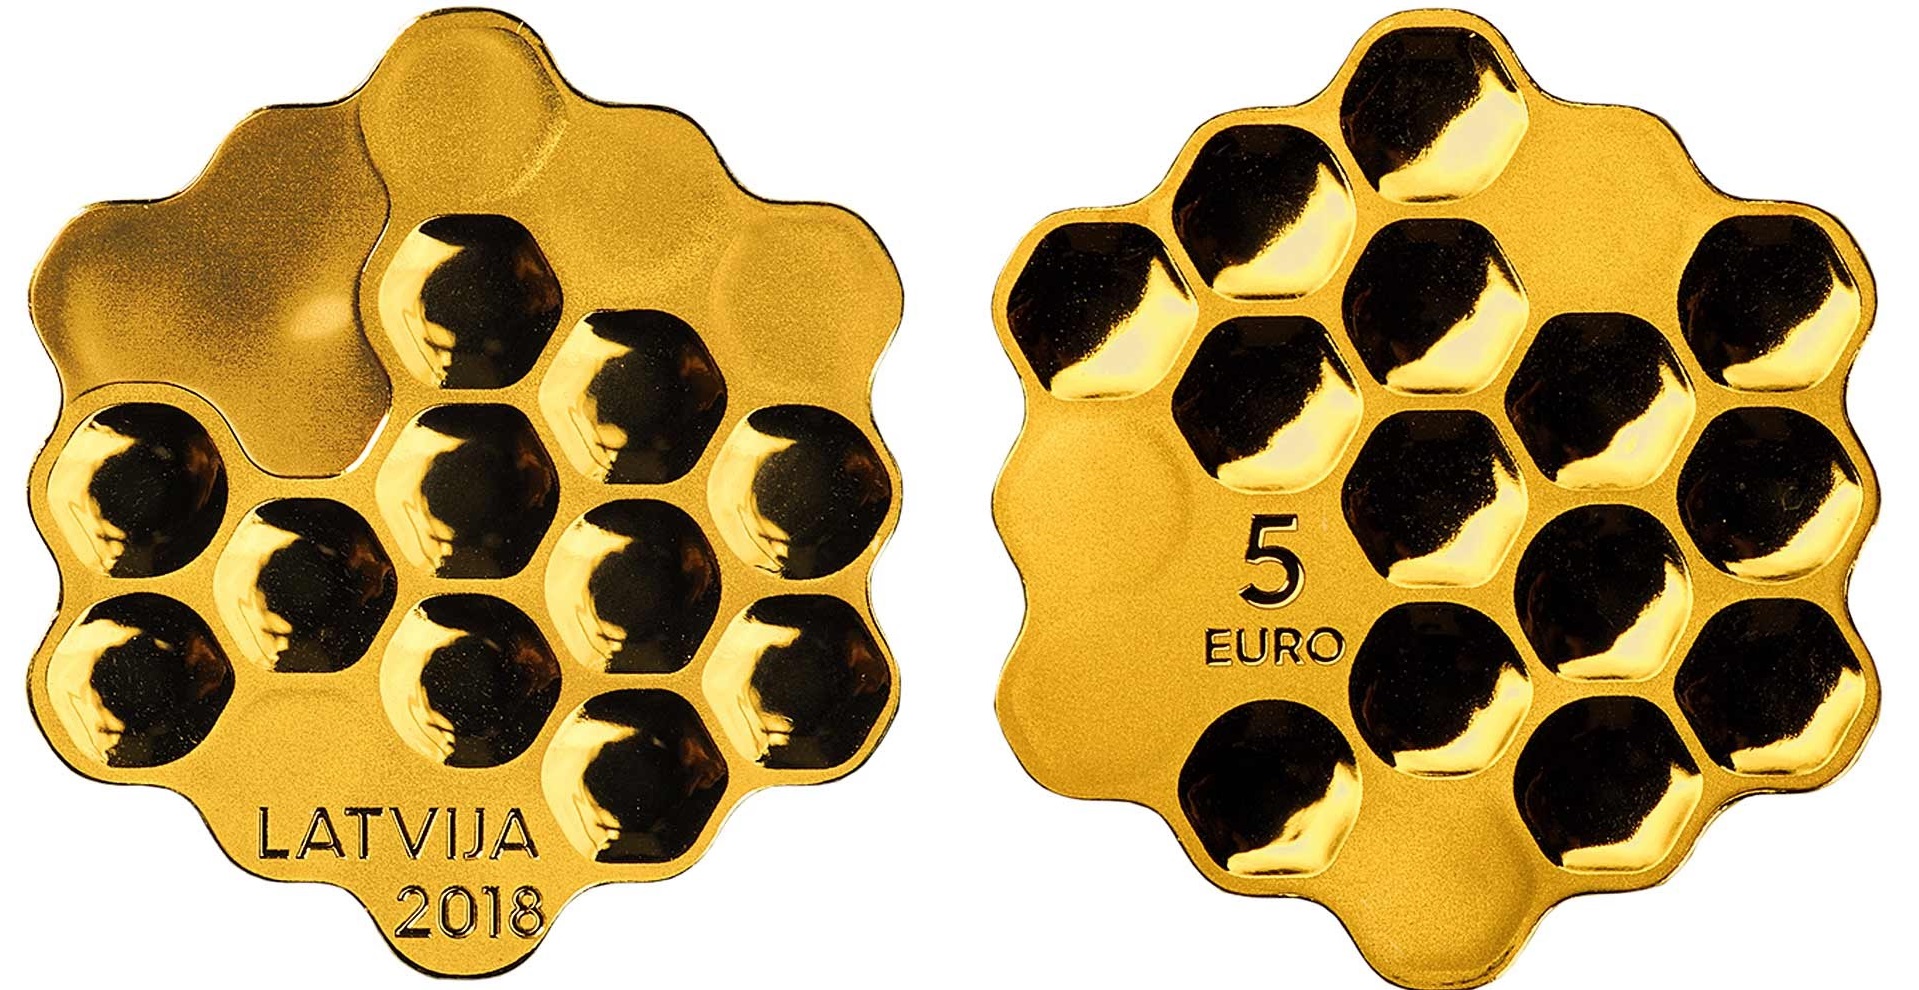 Ecco la bella moneta-alveare dal profilo esagonale emessa dalla Lettonia per il secolo della prima indipendenza